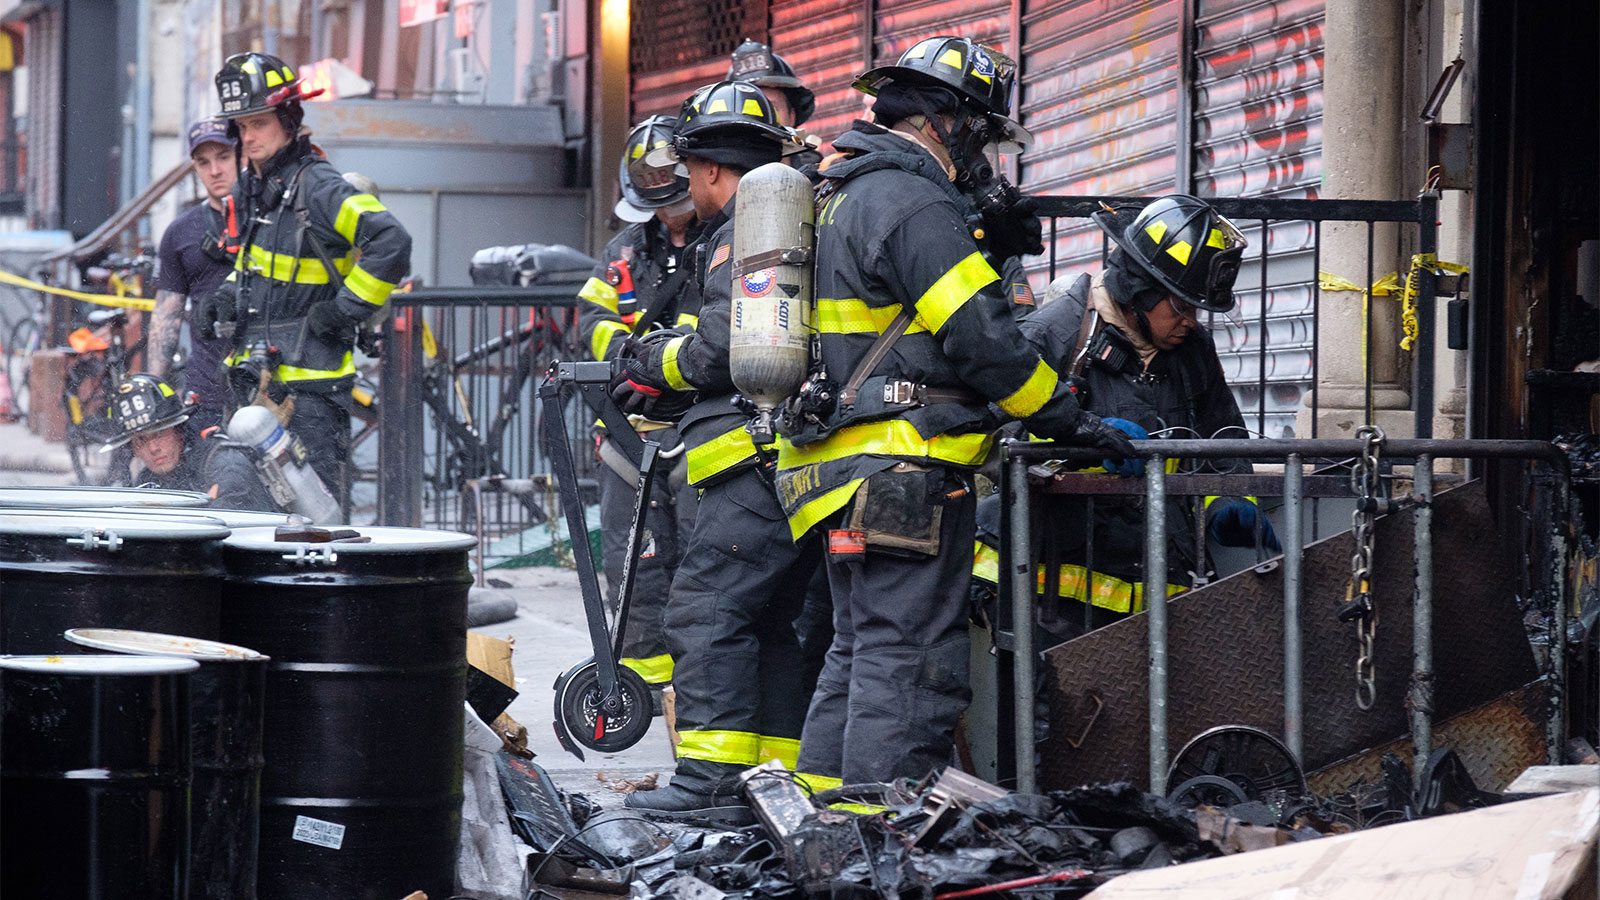 Một số lính cứu hỏa đội mũ bảo hiểm và mặc đồ chống cháy màu đen đứng trên vỉa hè giữa một cửa hàng có cửa chớp, một số rác và một số thùng hình trụ